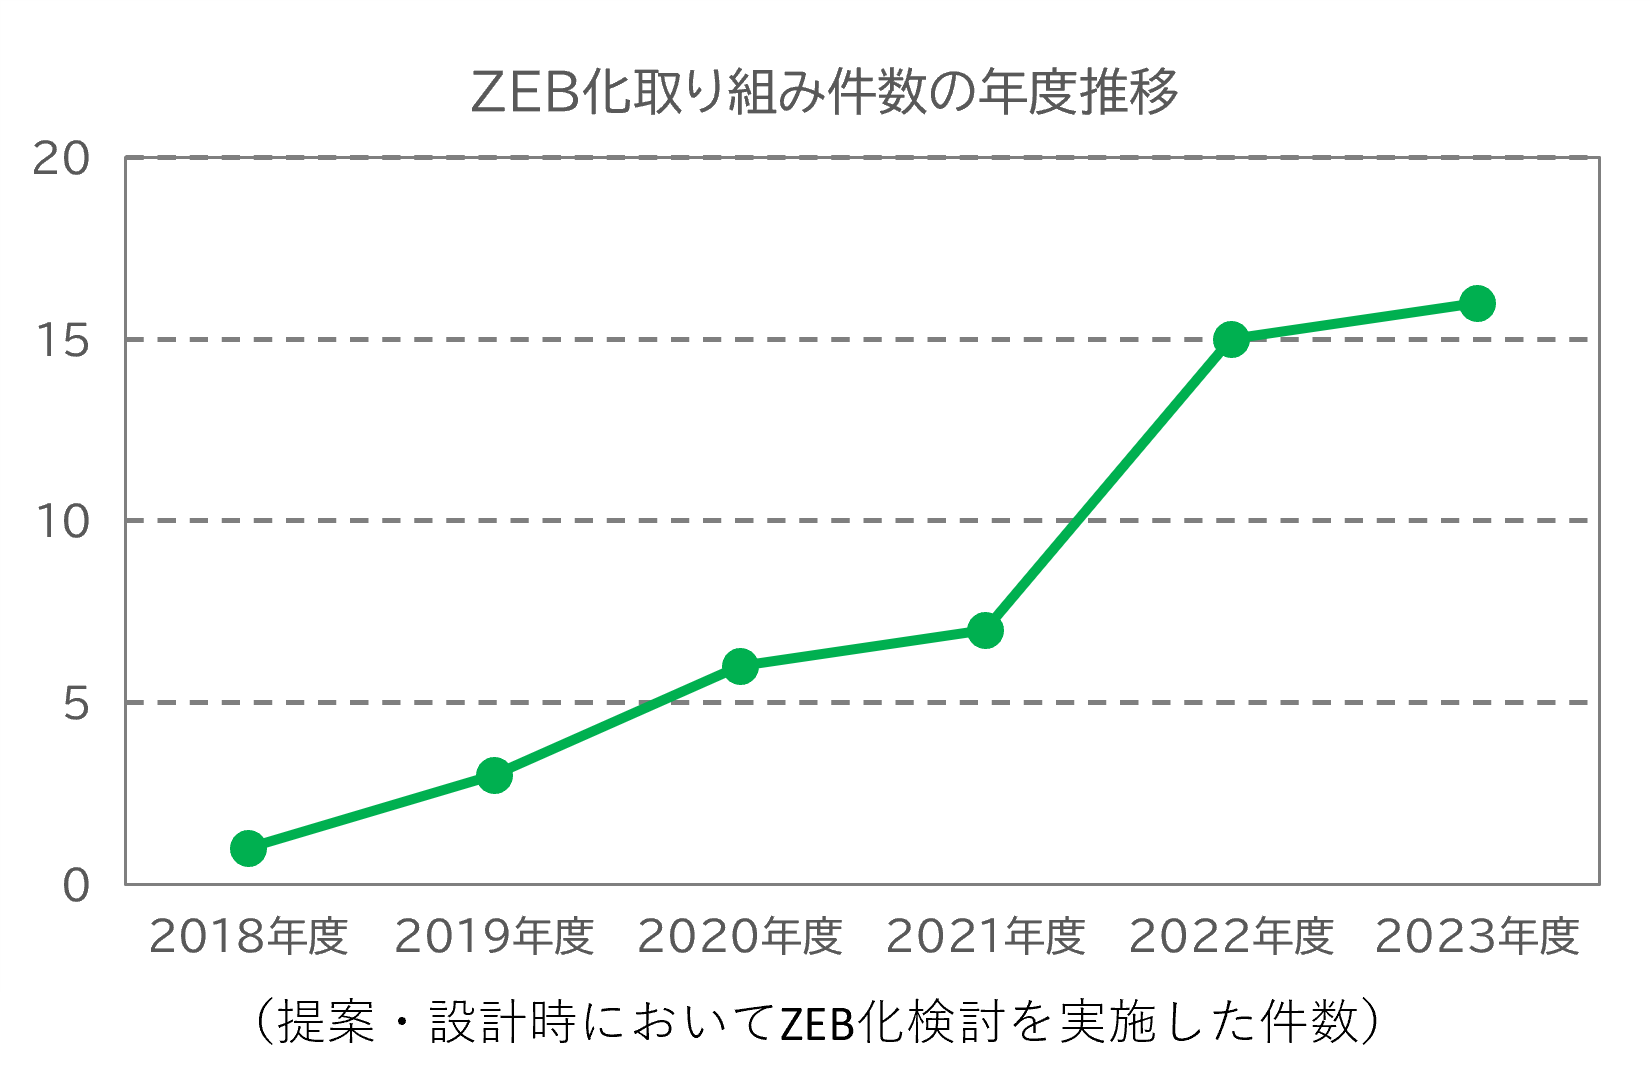 ZEB化取り組み件数の年度推移